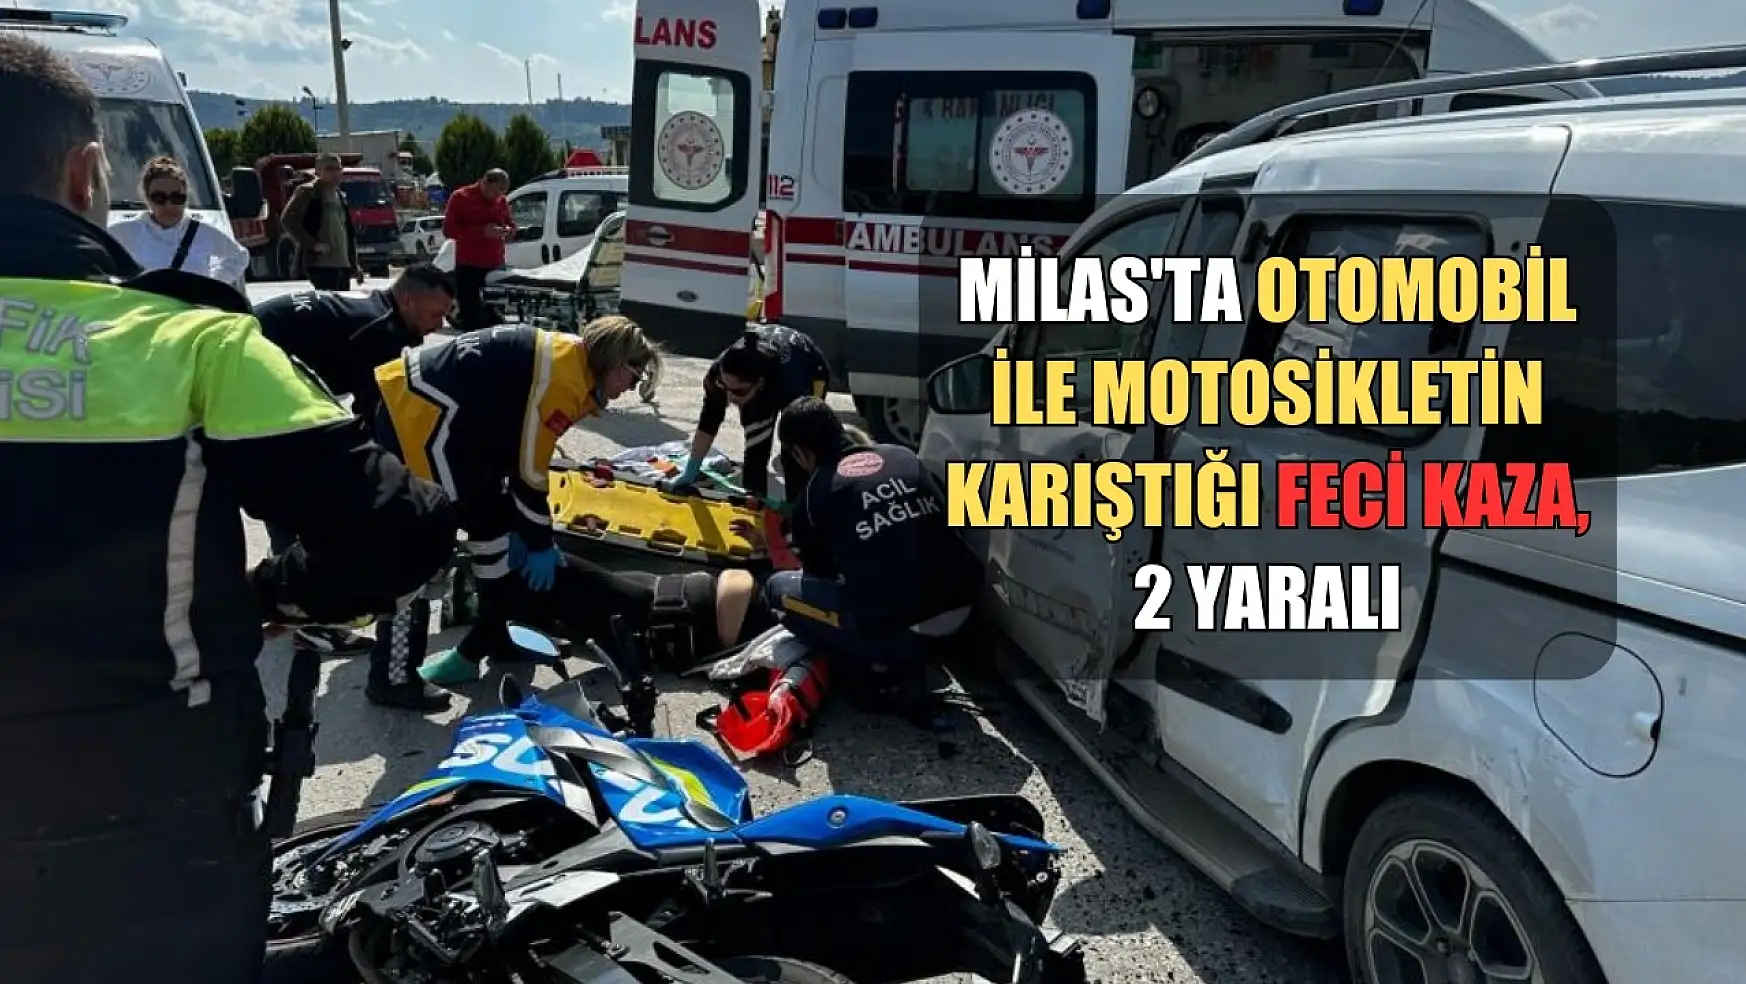 Milas'ta otomobil ile motosikletin karıştığı feci kaza, 2 yaralı